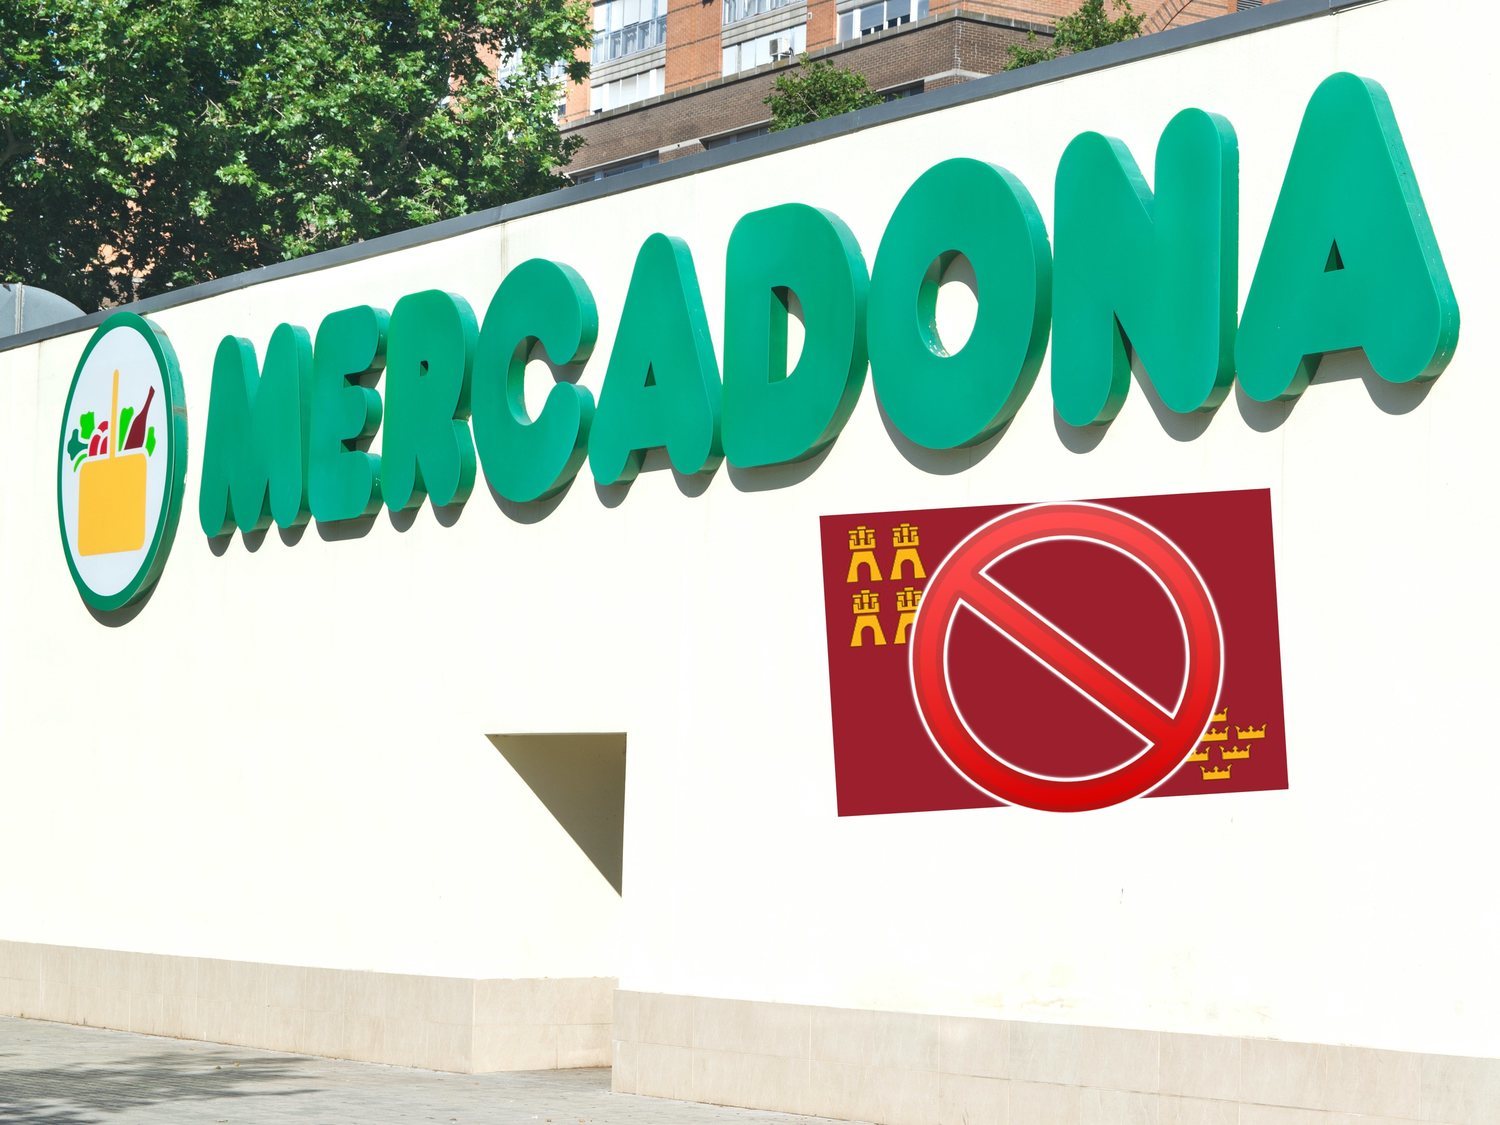 Critican a Mercadona por vender productos de Murcia en sus supermercados